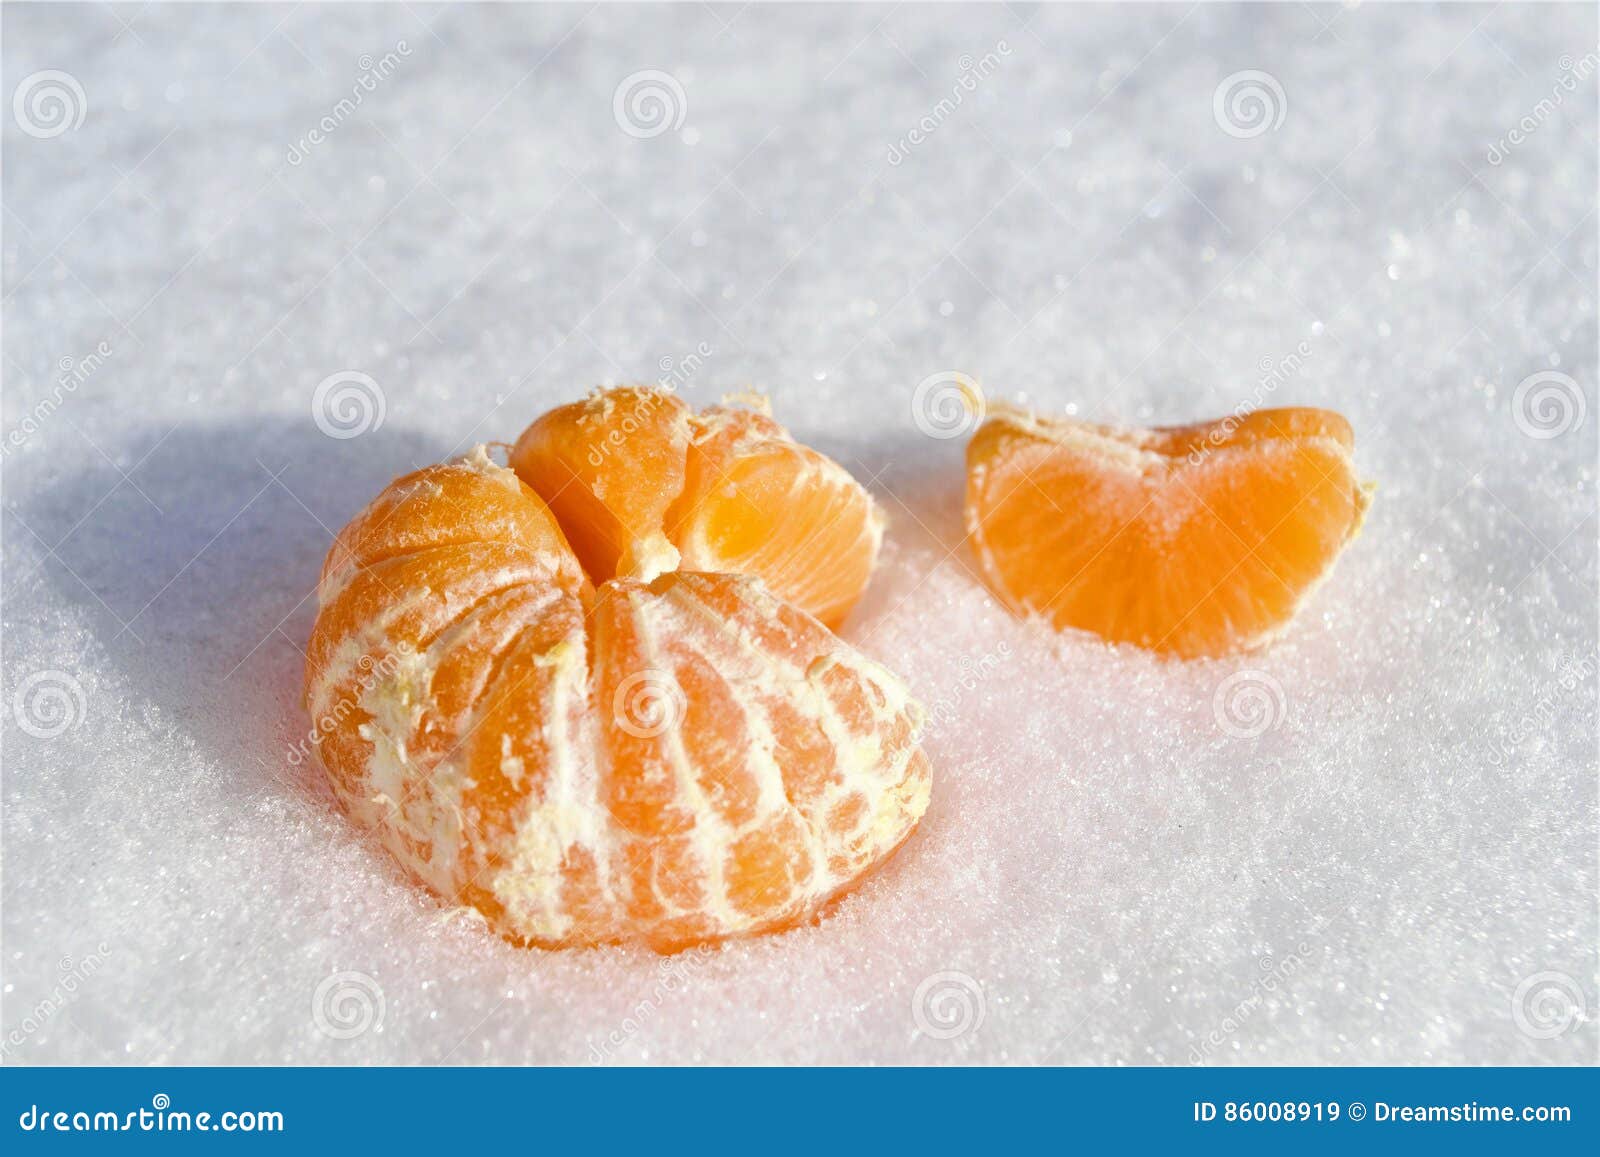 В пакете лежат мандарины. Мандарины на снегу. Мандарины в снегу на белом фоне. Мандарины на снегу рассыпал кто-то.